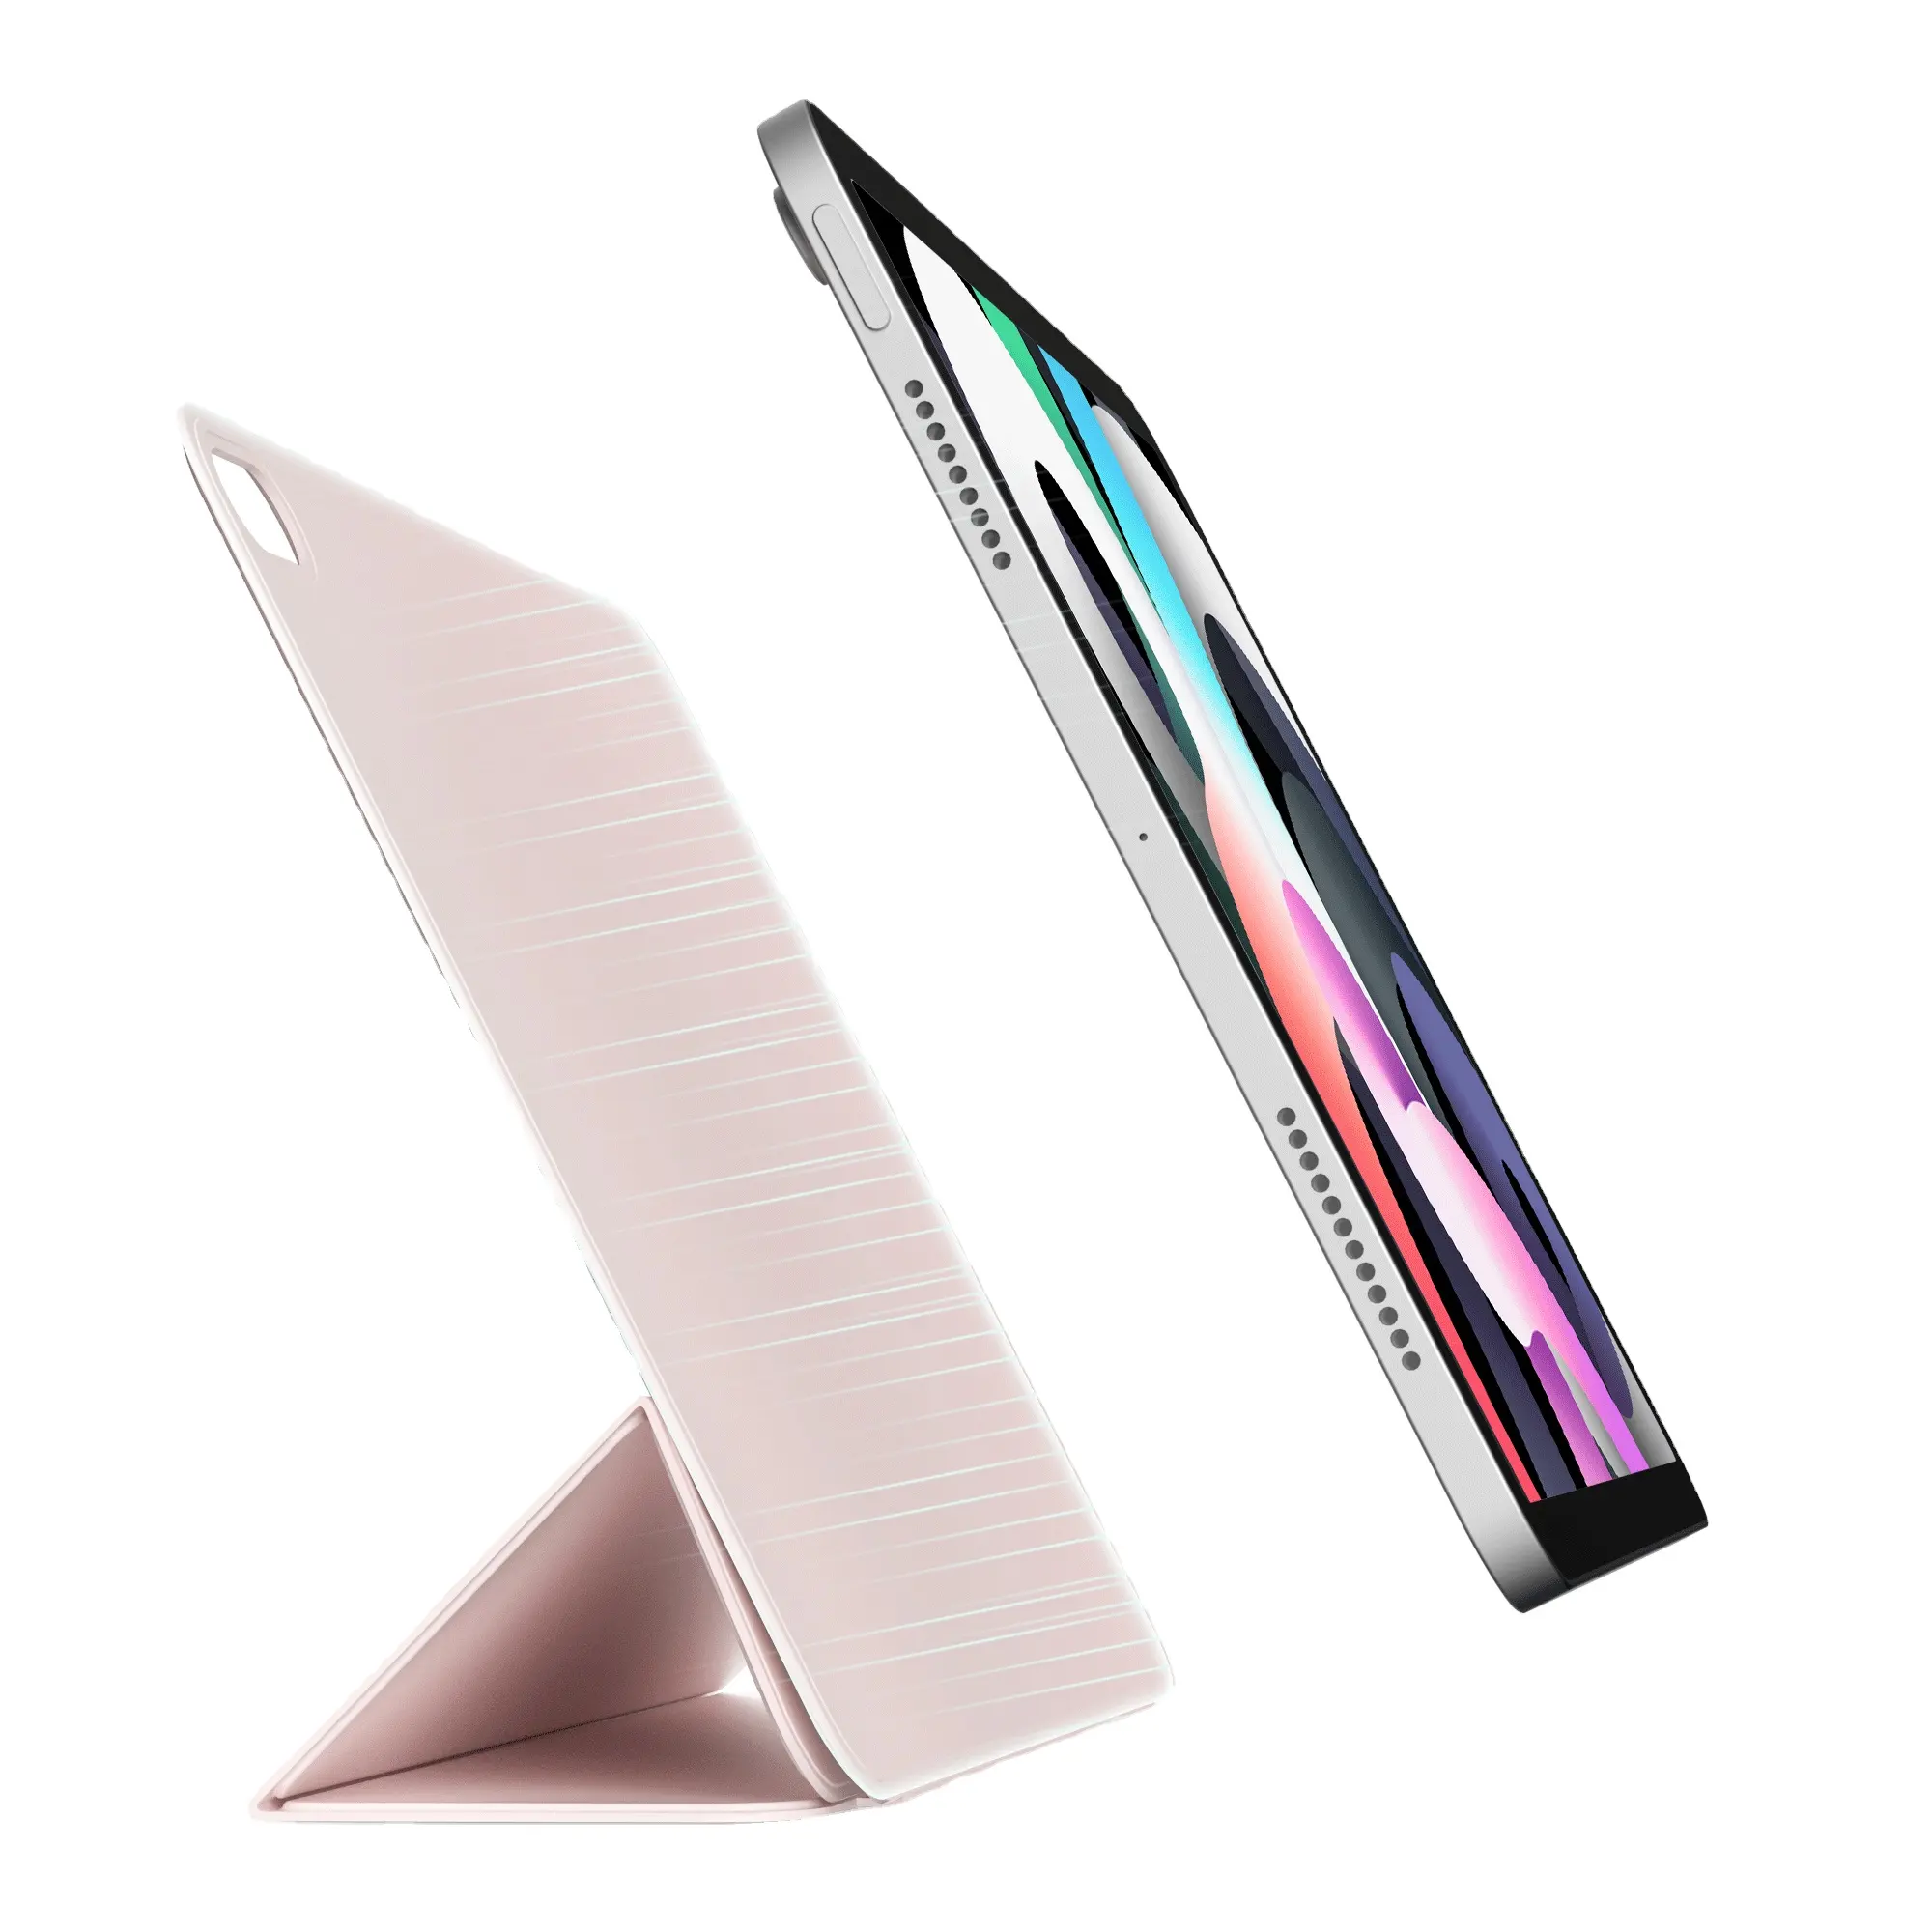 Capa com 3 dobras para tablet popular PU couro e capa inteligente para iPad mini6 8.3 polegadas